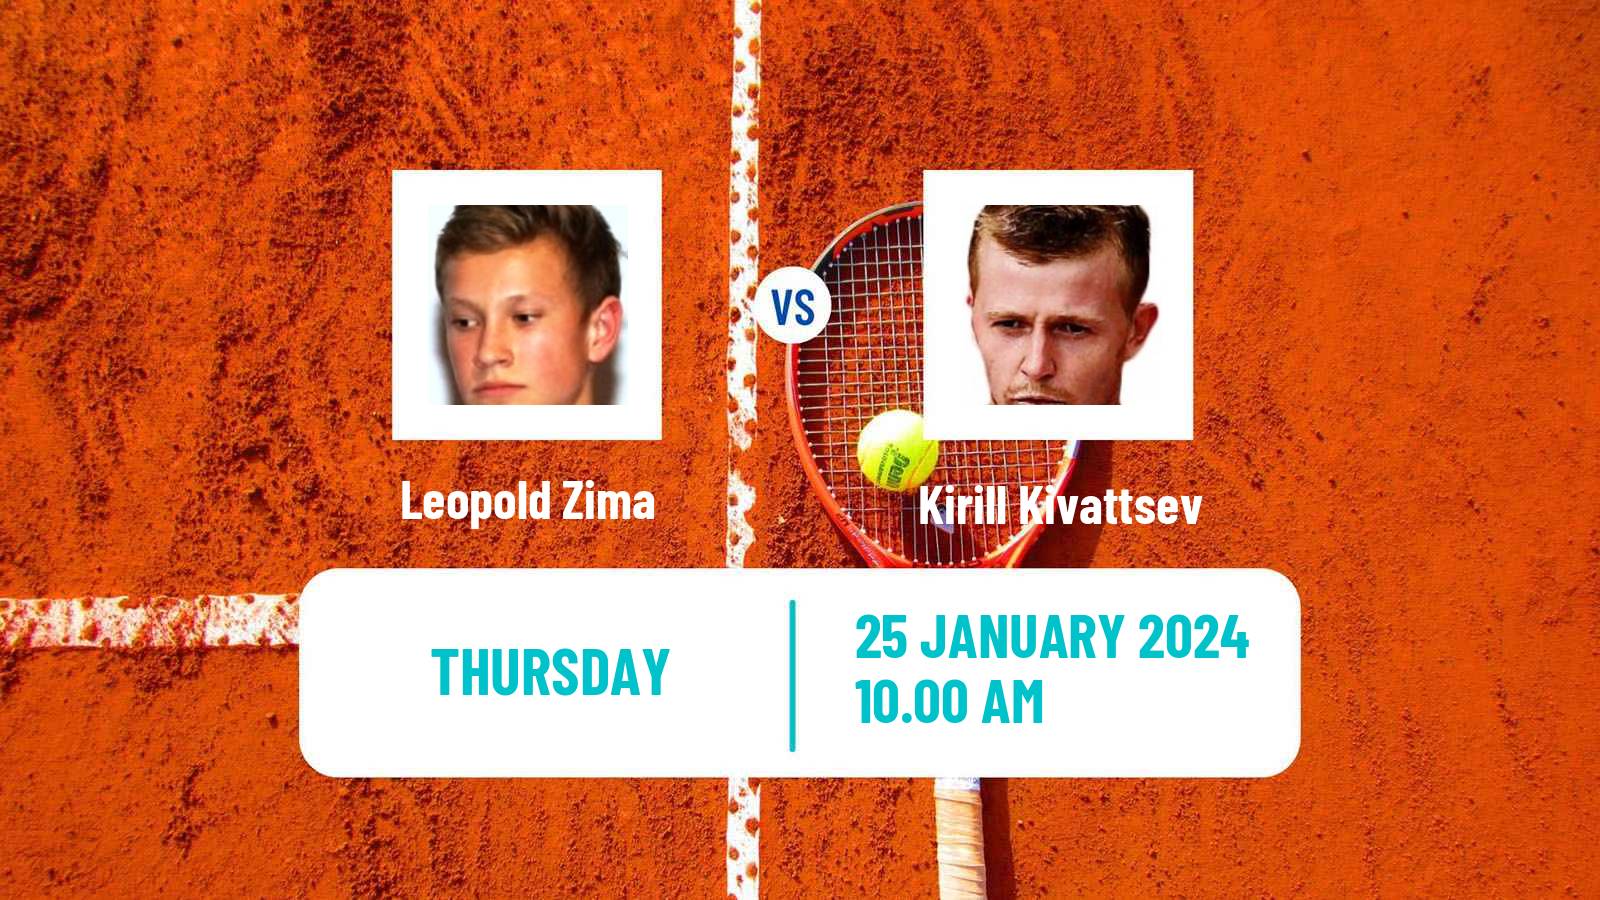 Tennis ITF M25 Nussloch Men Leopold Zima - Kirill Kivattsev